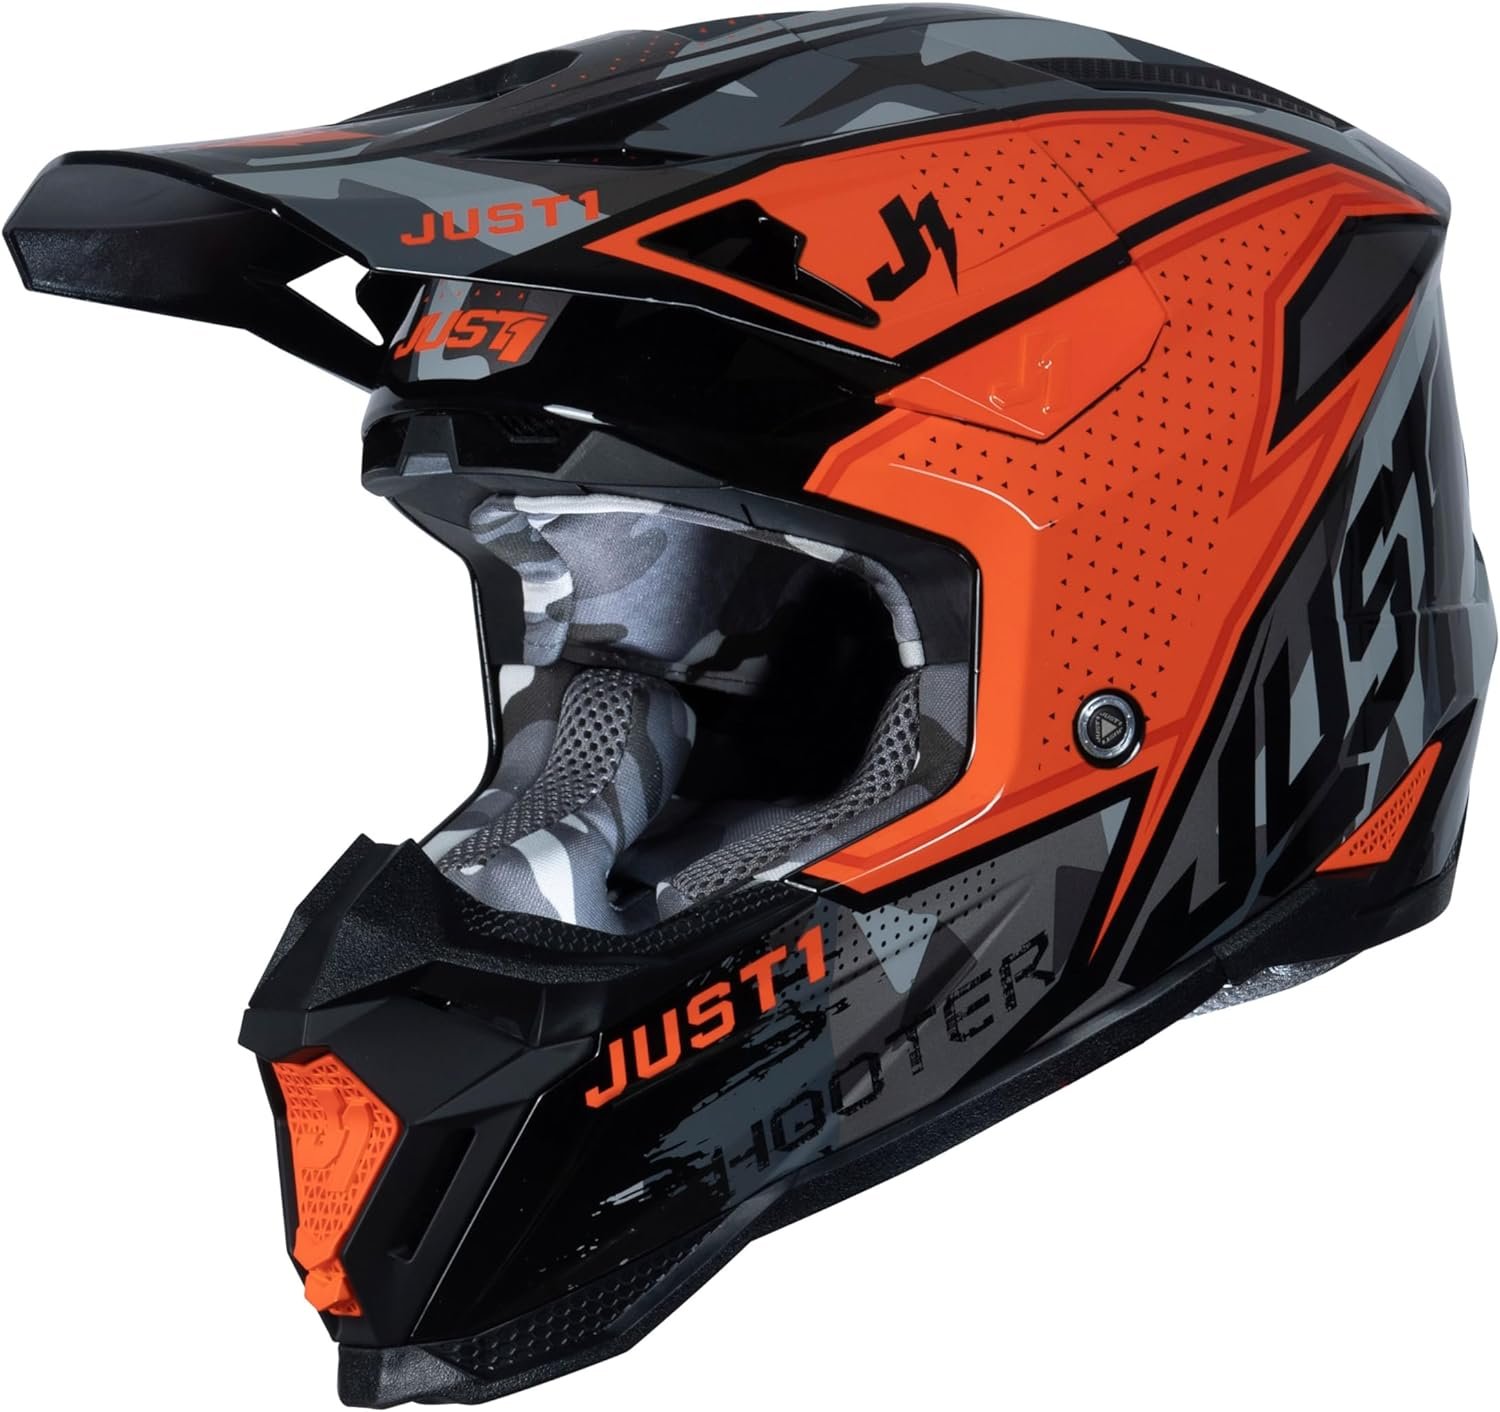 Just1 Racing J40 MX Motocross Helmet Review